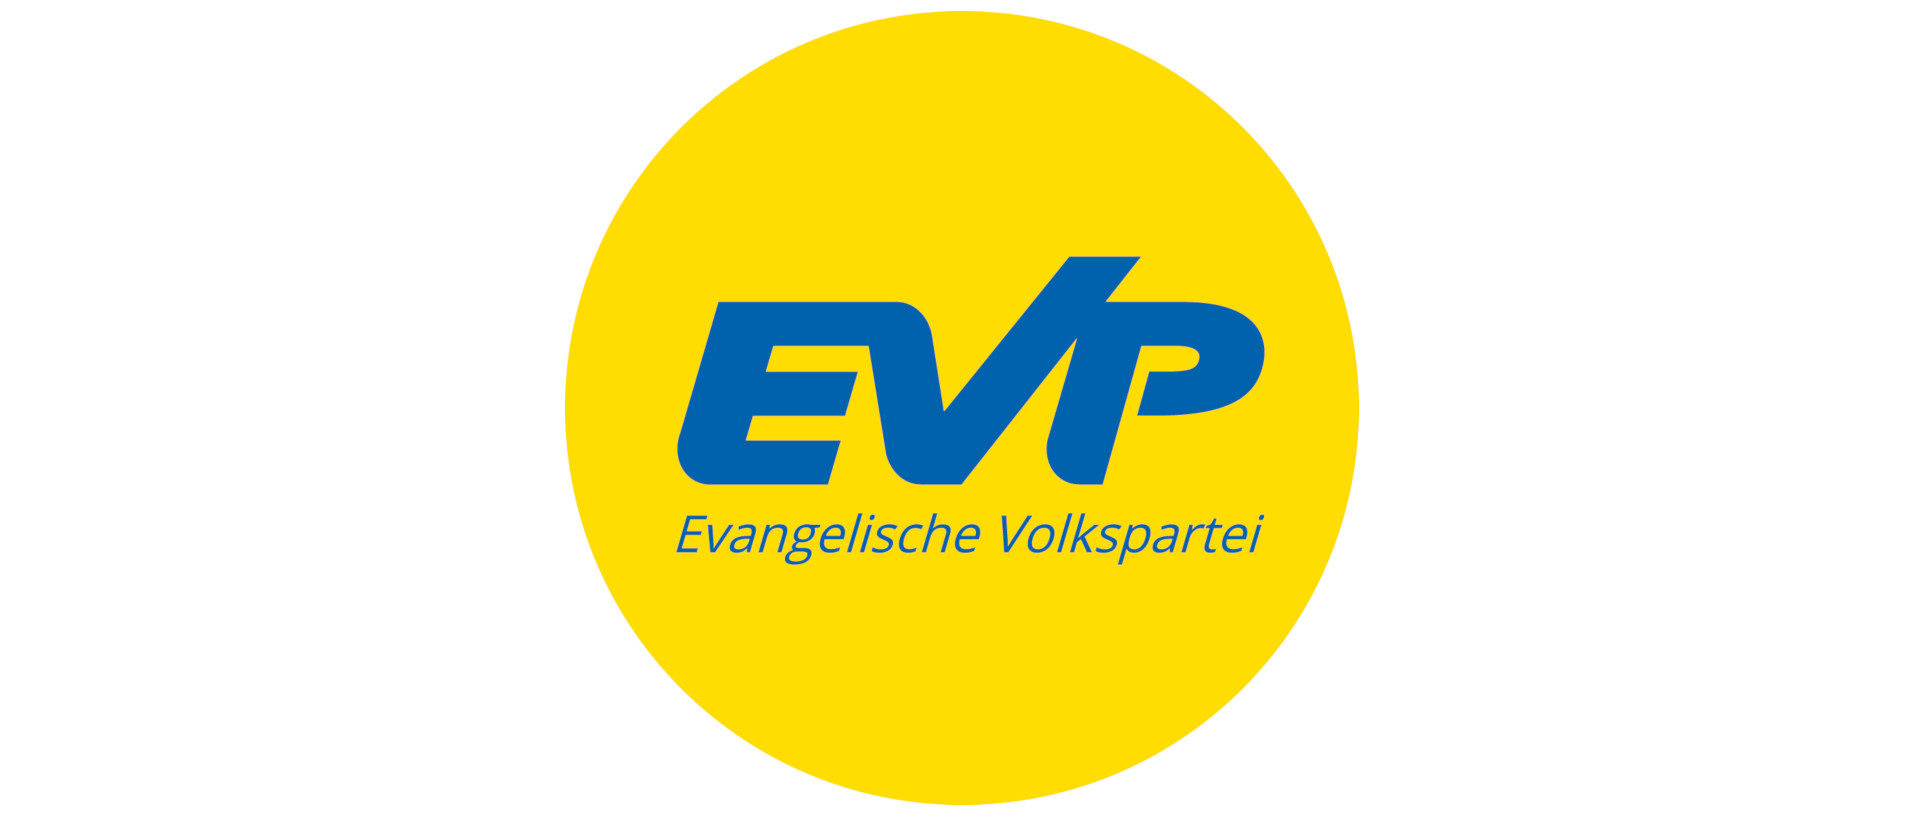 Evangelische Volkspartei